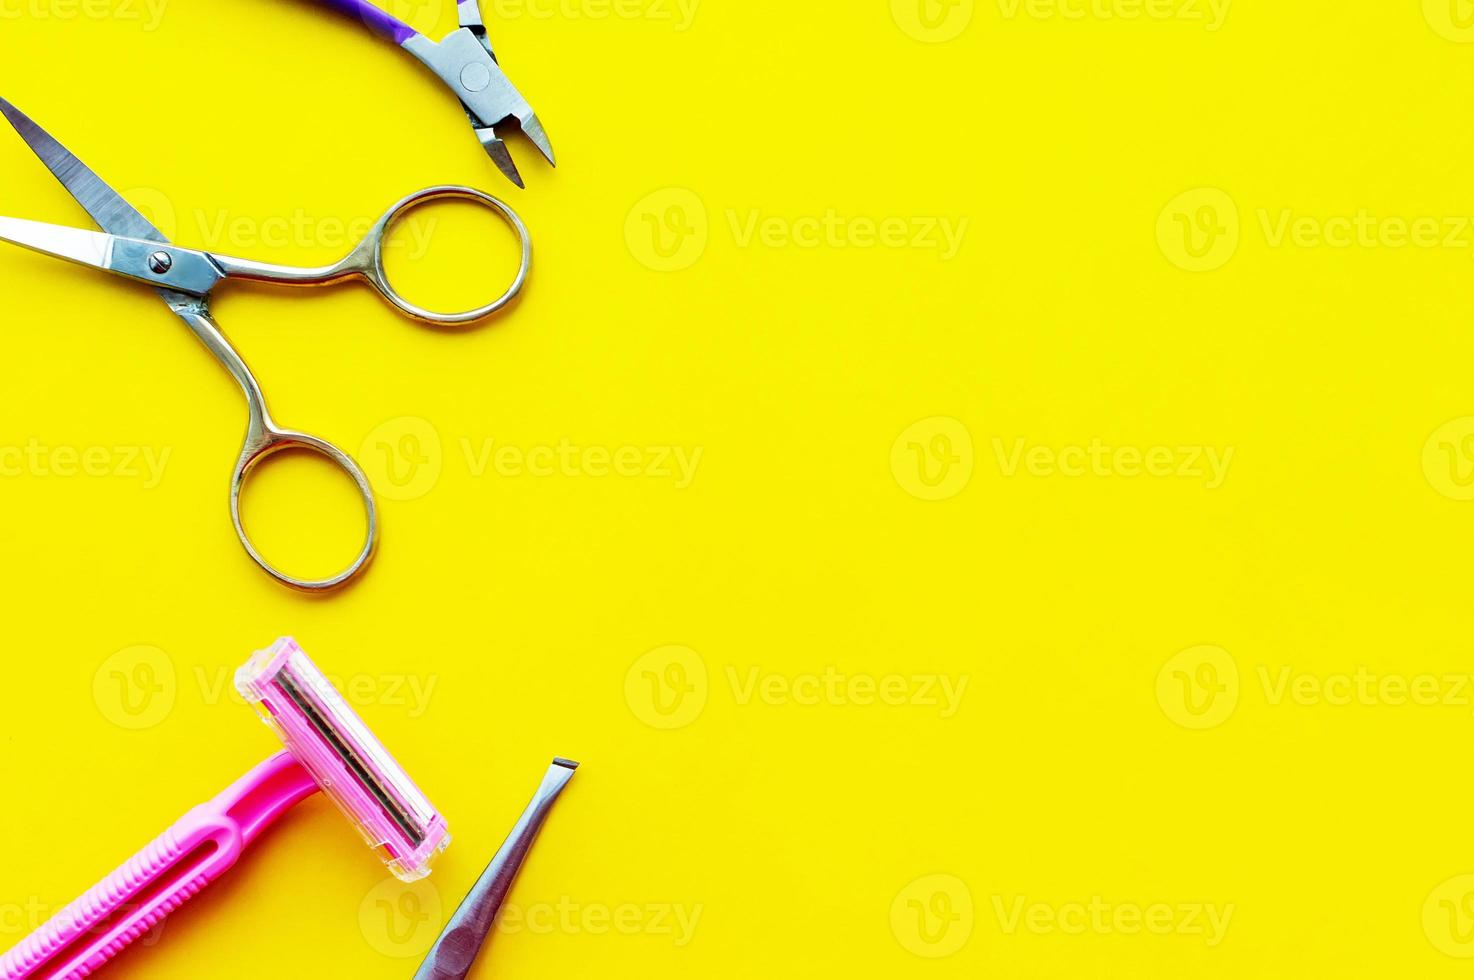 scheermachine, schaar, wenkbrauwtang en nagelknipper op een gele achtergrond met een plek om te schrijven foto